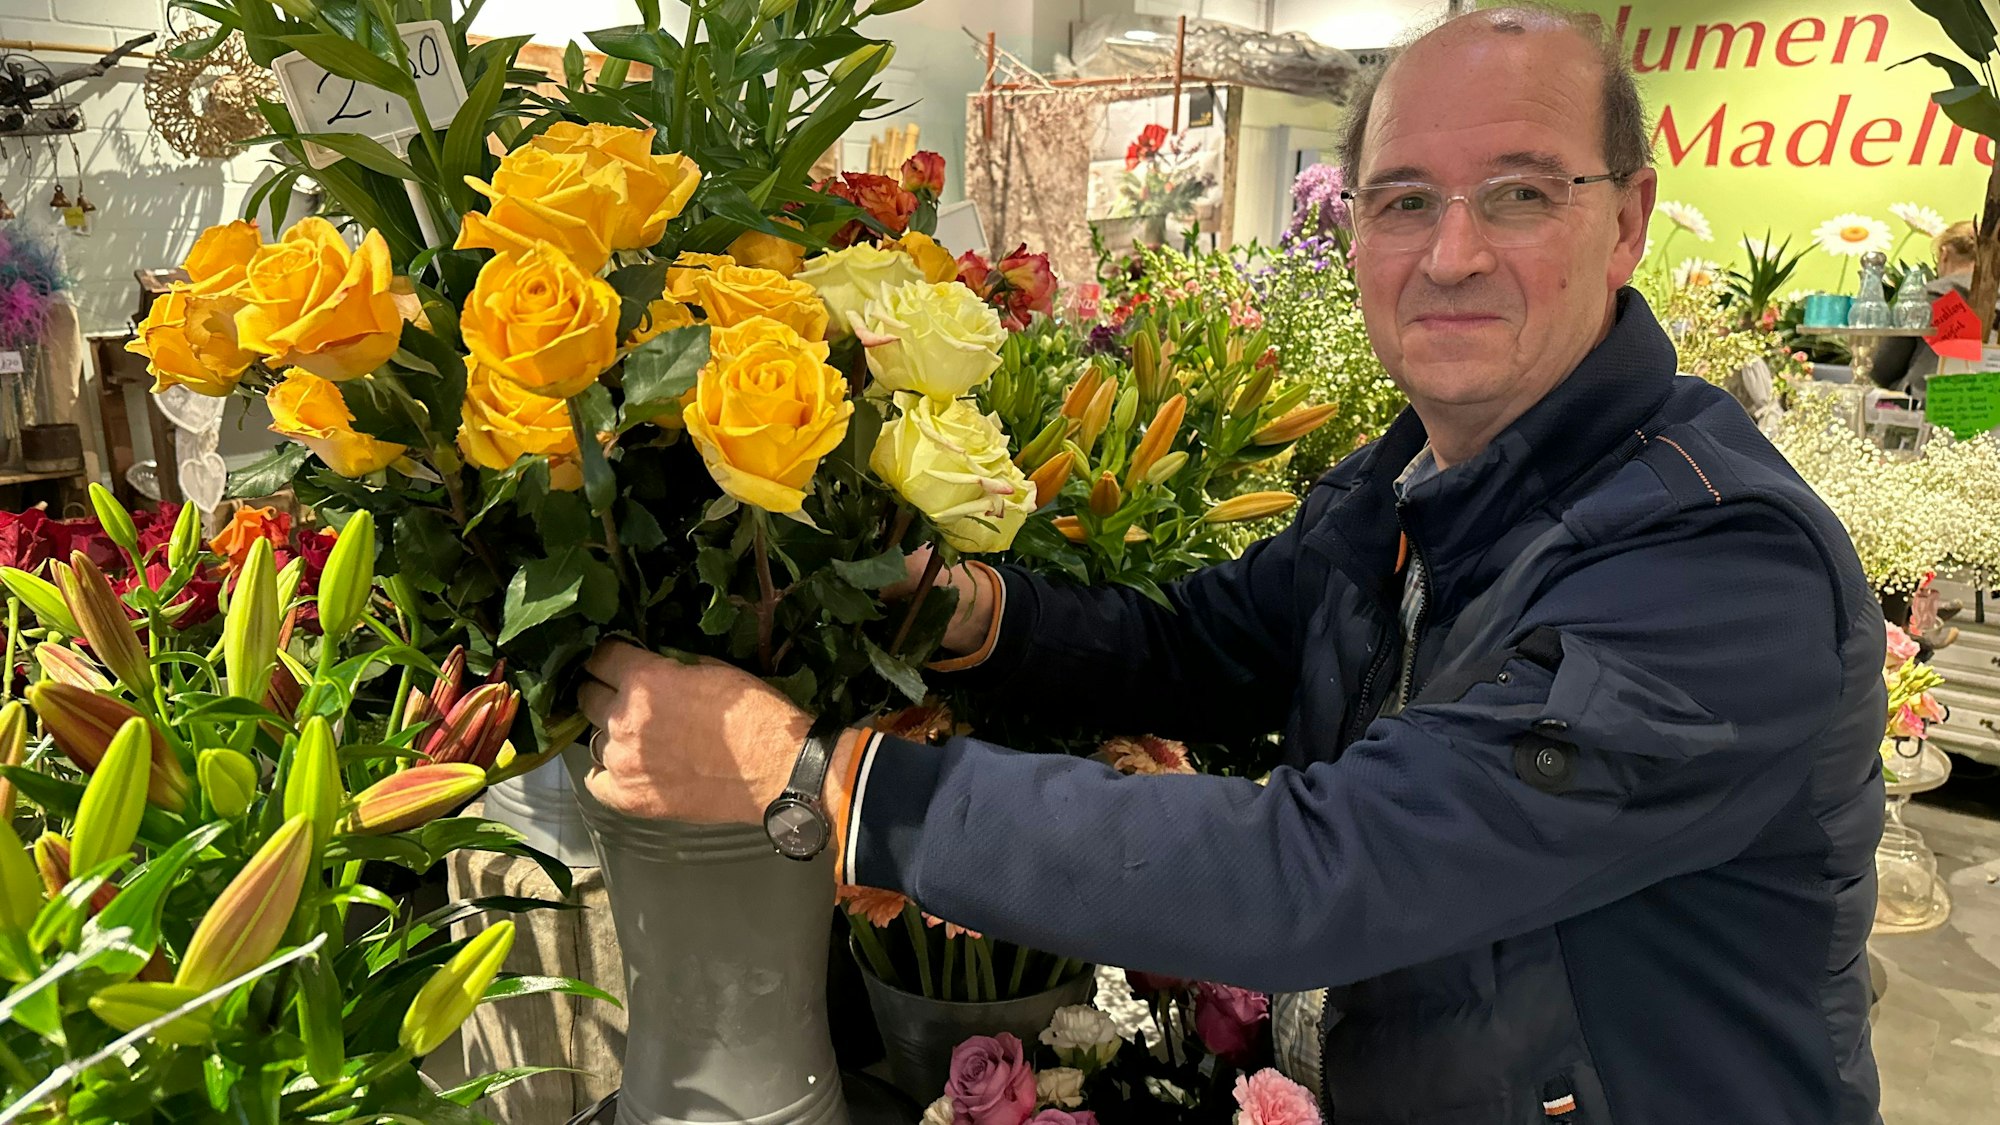 Blumenhändler Cornelius Geerlings mit gelben Rosen inmitten der bunten Blumen in seinem Laden.